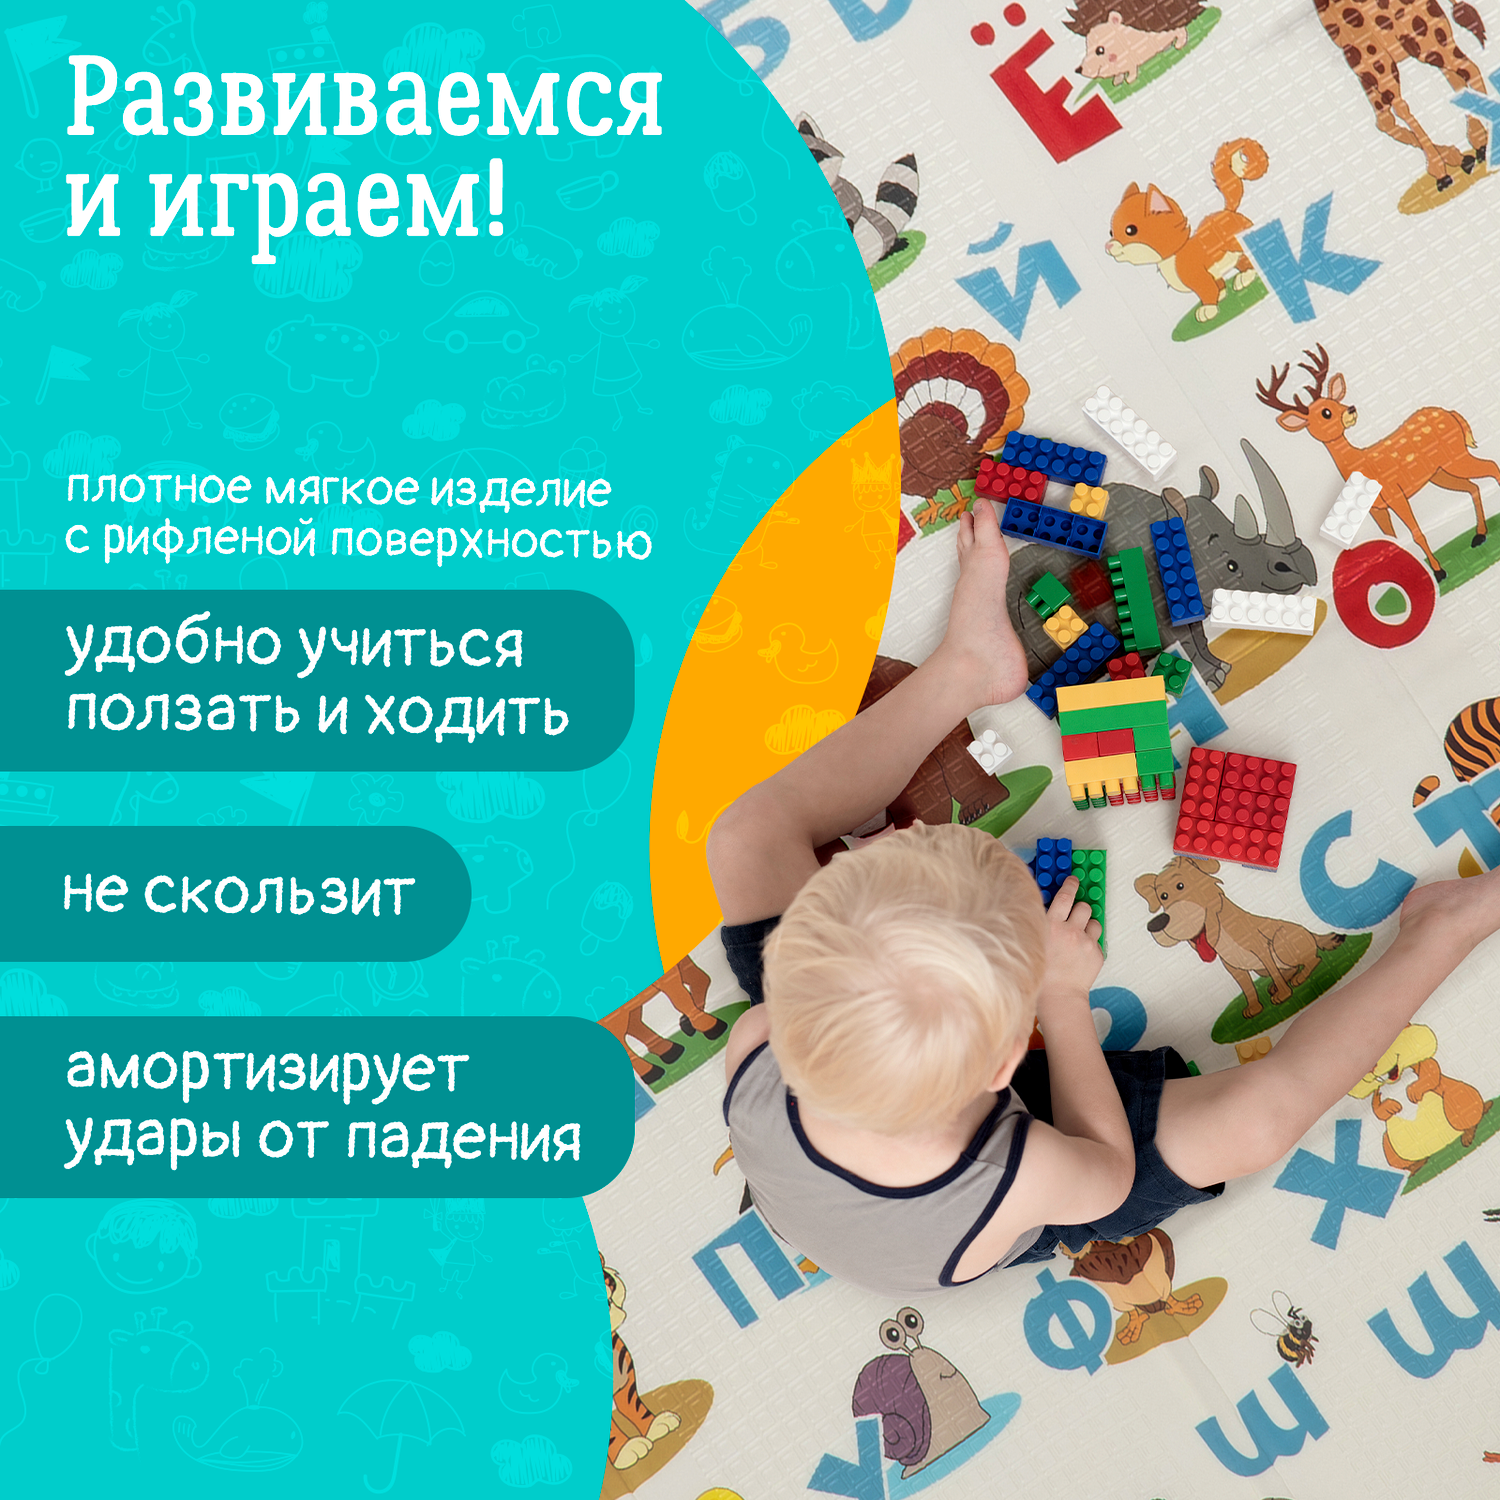 Детский коврик WellMat для ползания 150x200 Premium Русский алфавит/Городок складной развивающий - фото 3